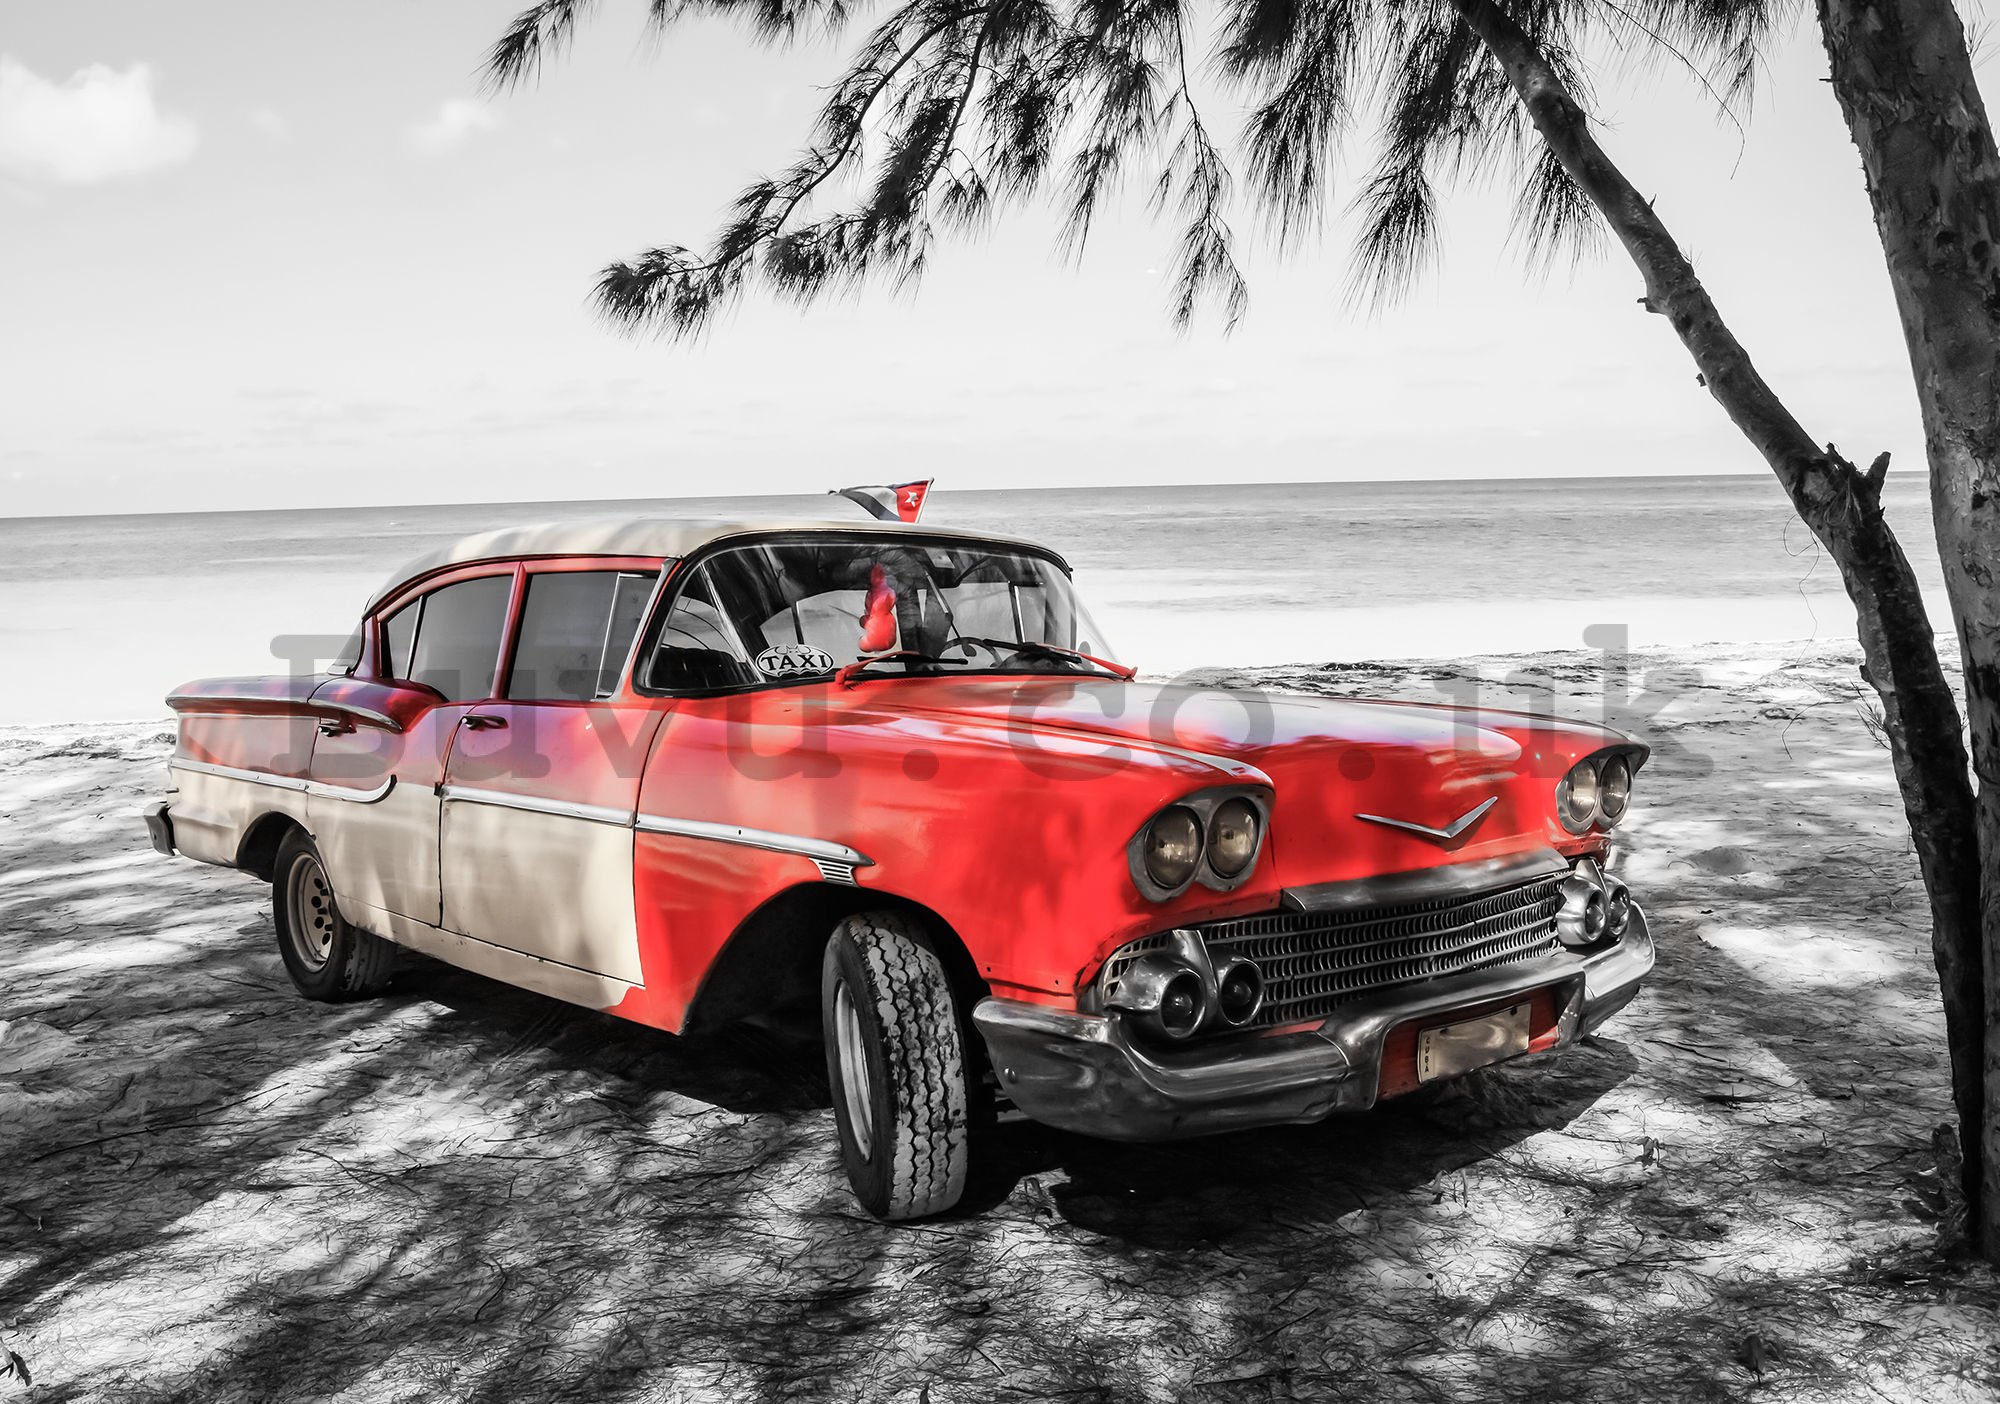 Wall mural vlies: Cuba red car by the sea - 254x368 cm